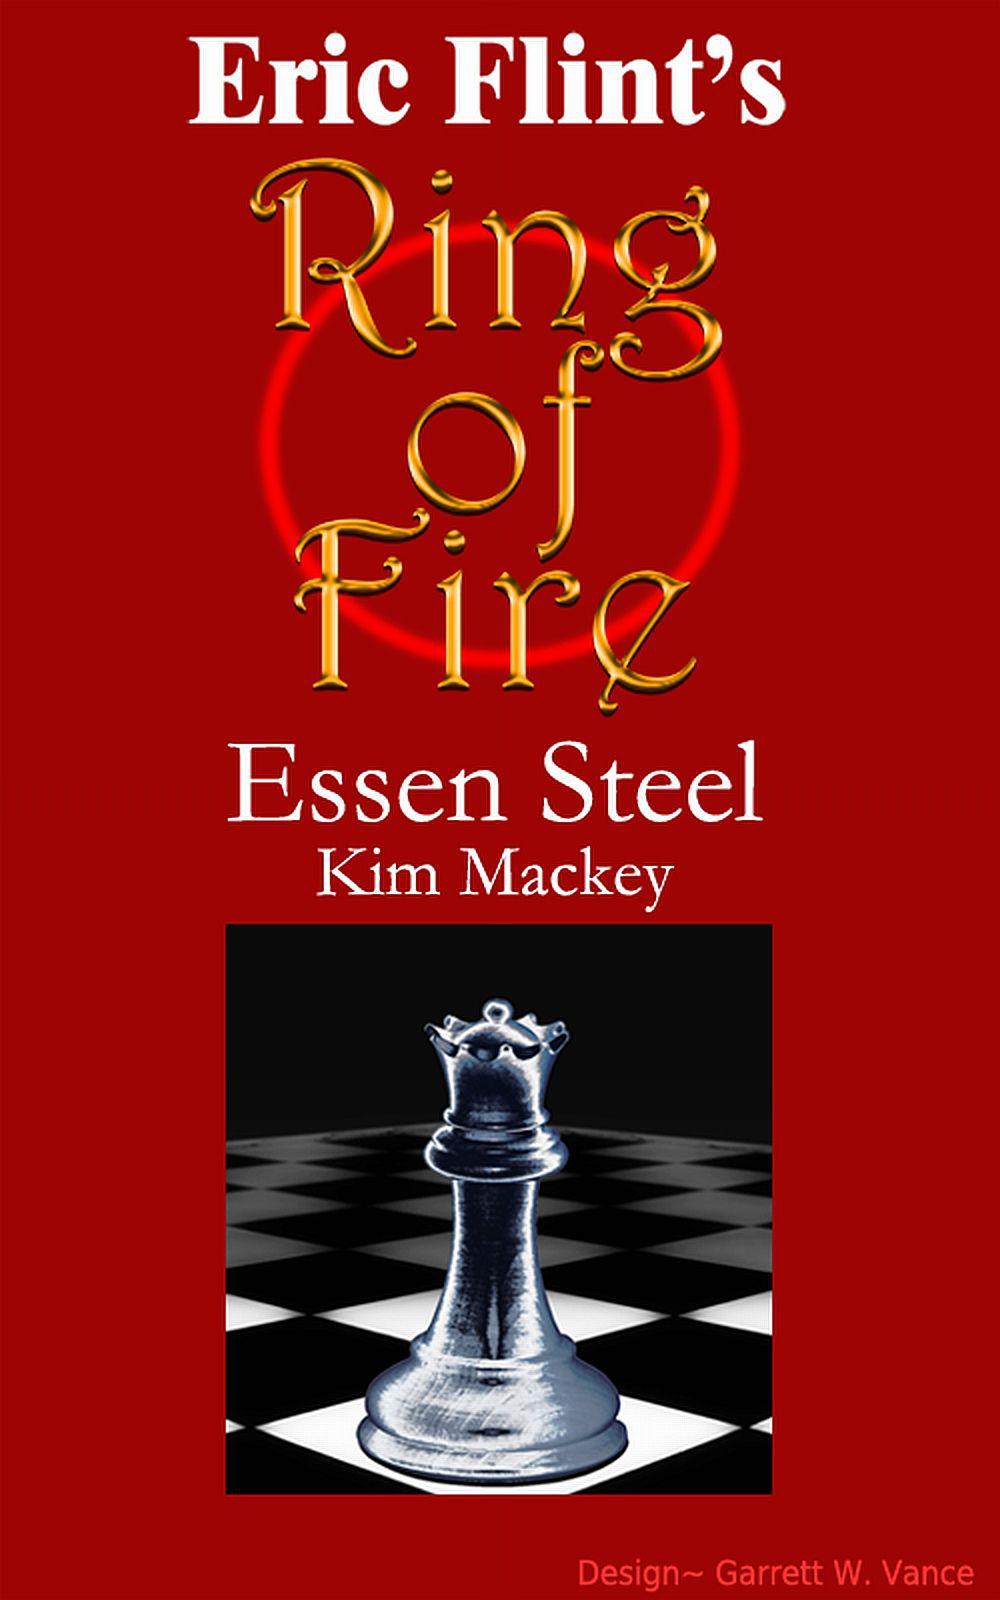 1632: Essen Steel by Eric Flint